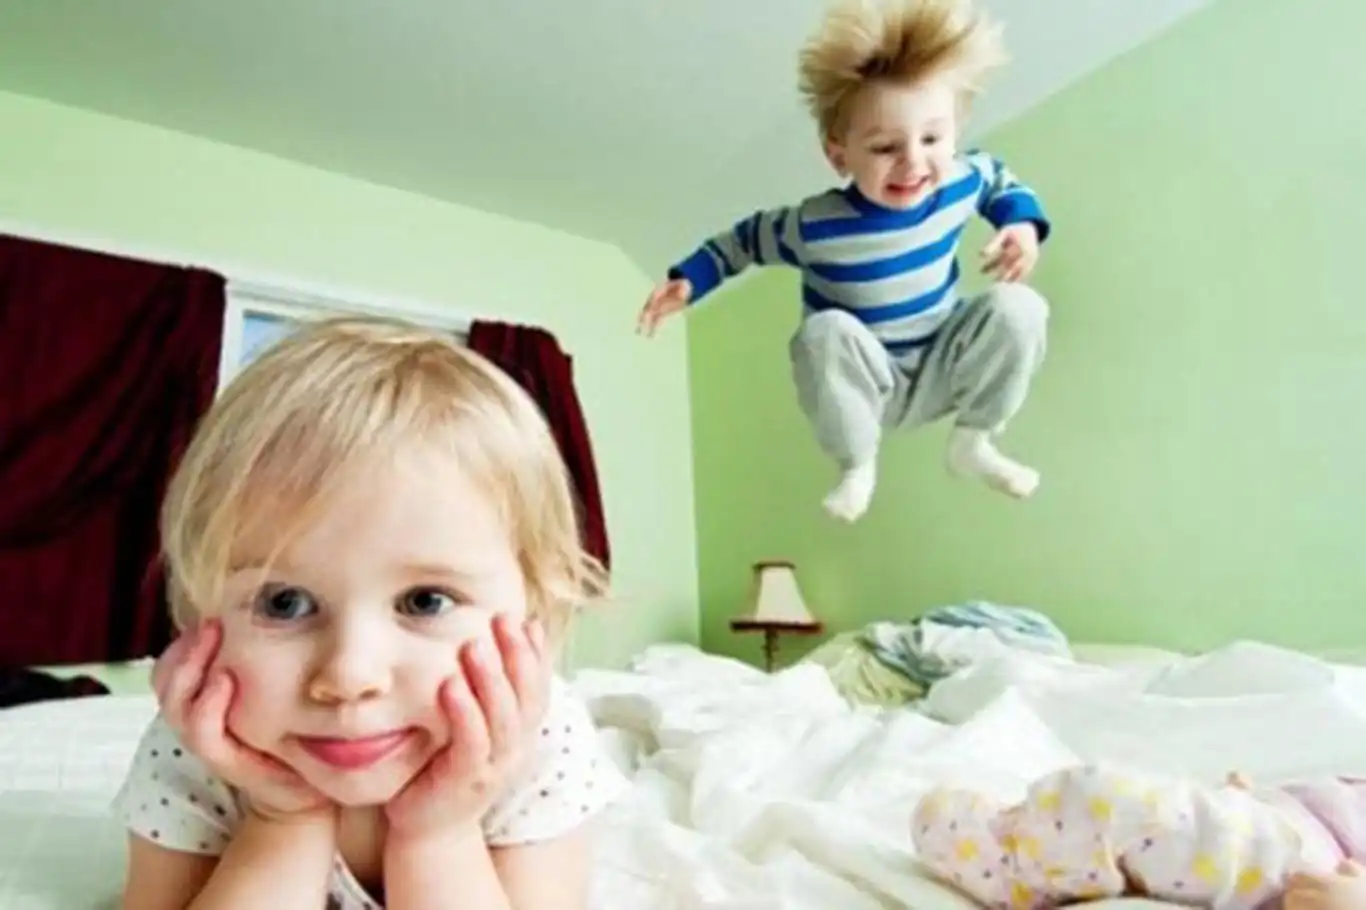 Her hareketli çocuk hiperaktif midir?